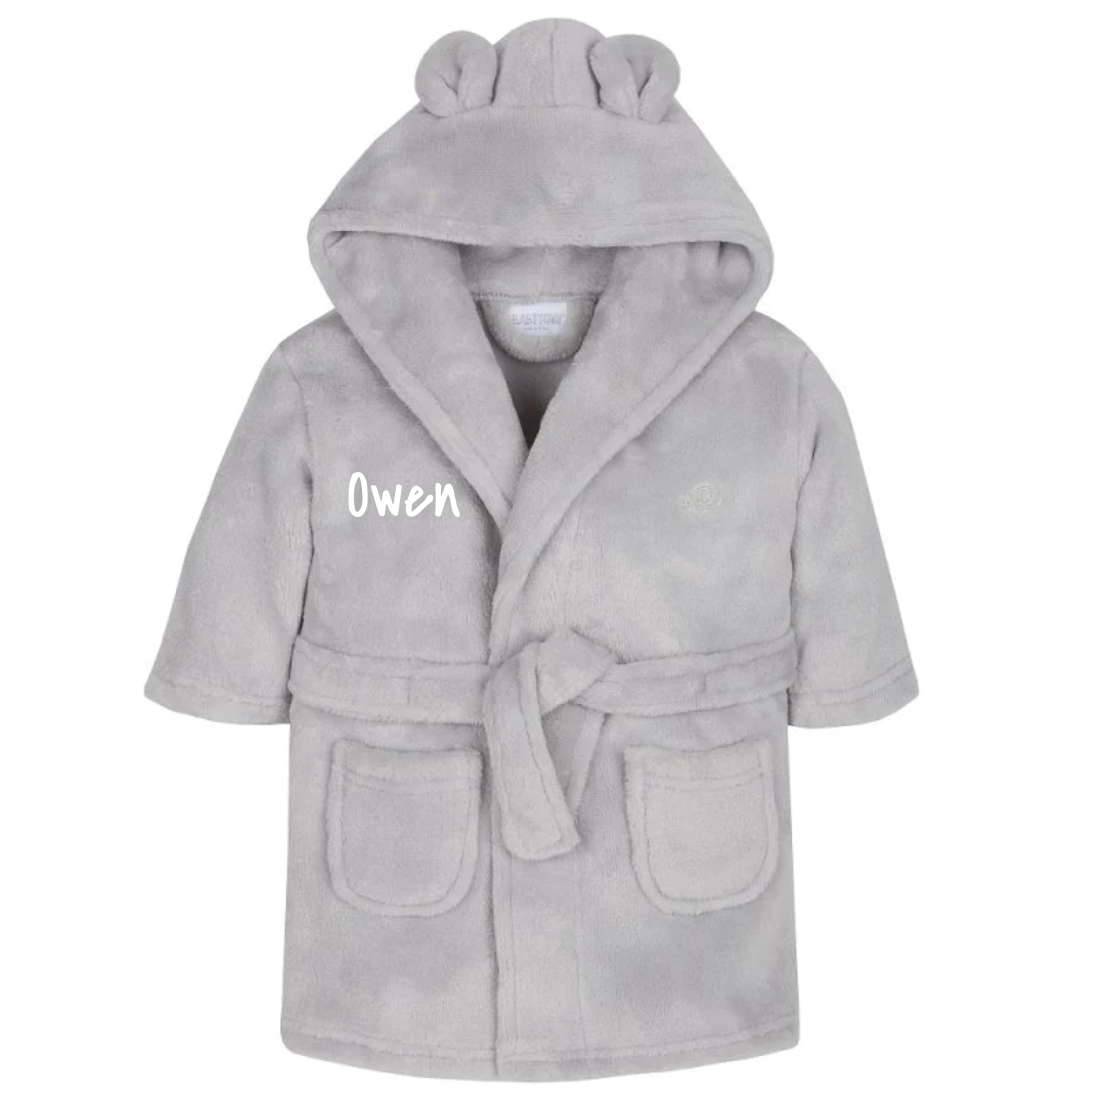 Personalised Kids Girls Dressing Gown Hooded Monster Fleece Robe Novelty  Gift UK | eBay